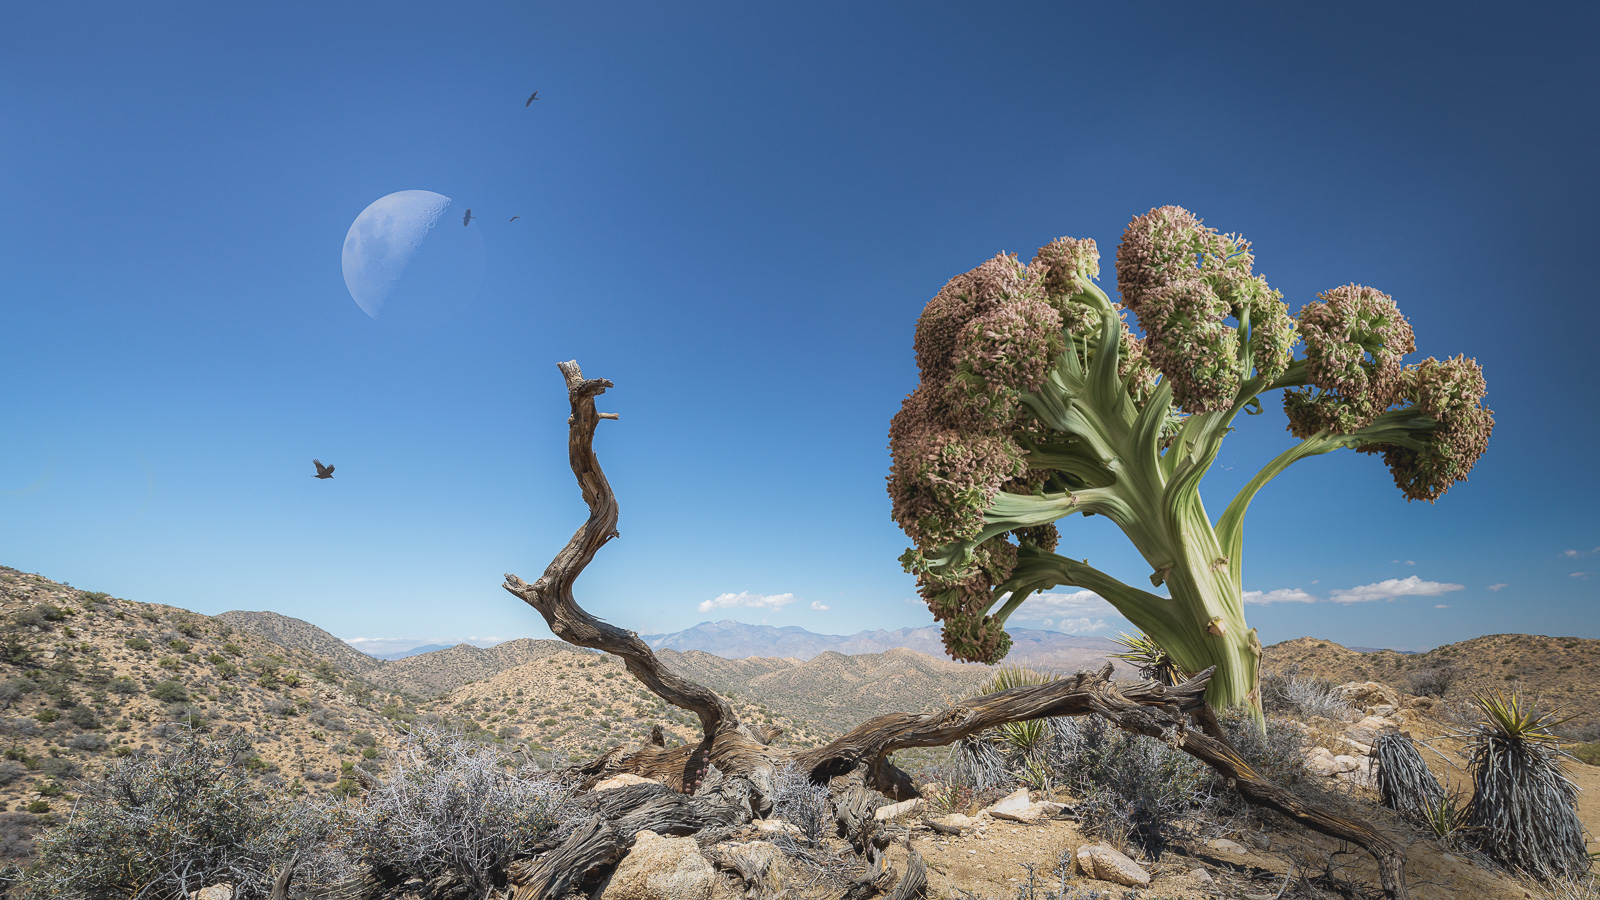 Broccoli desert